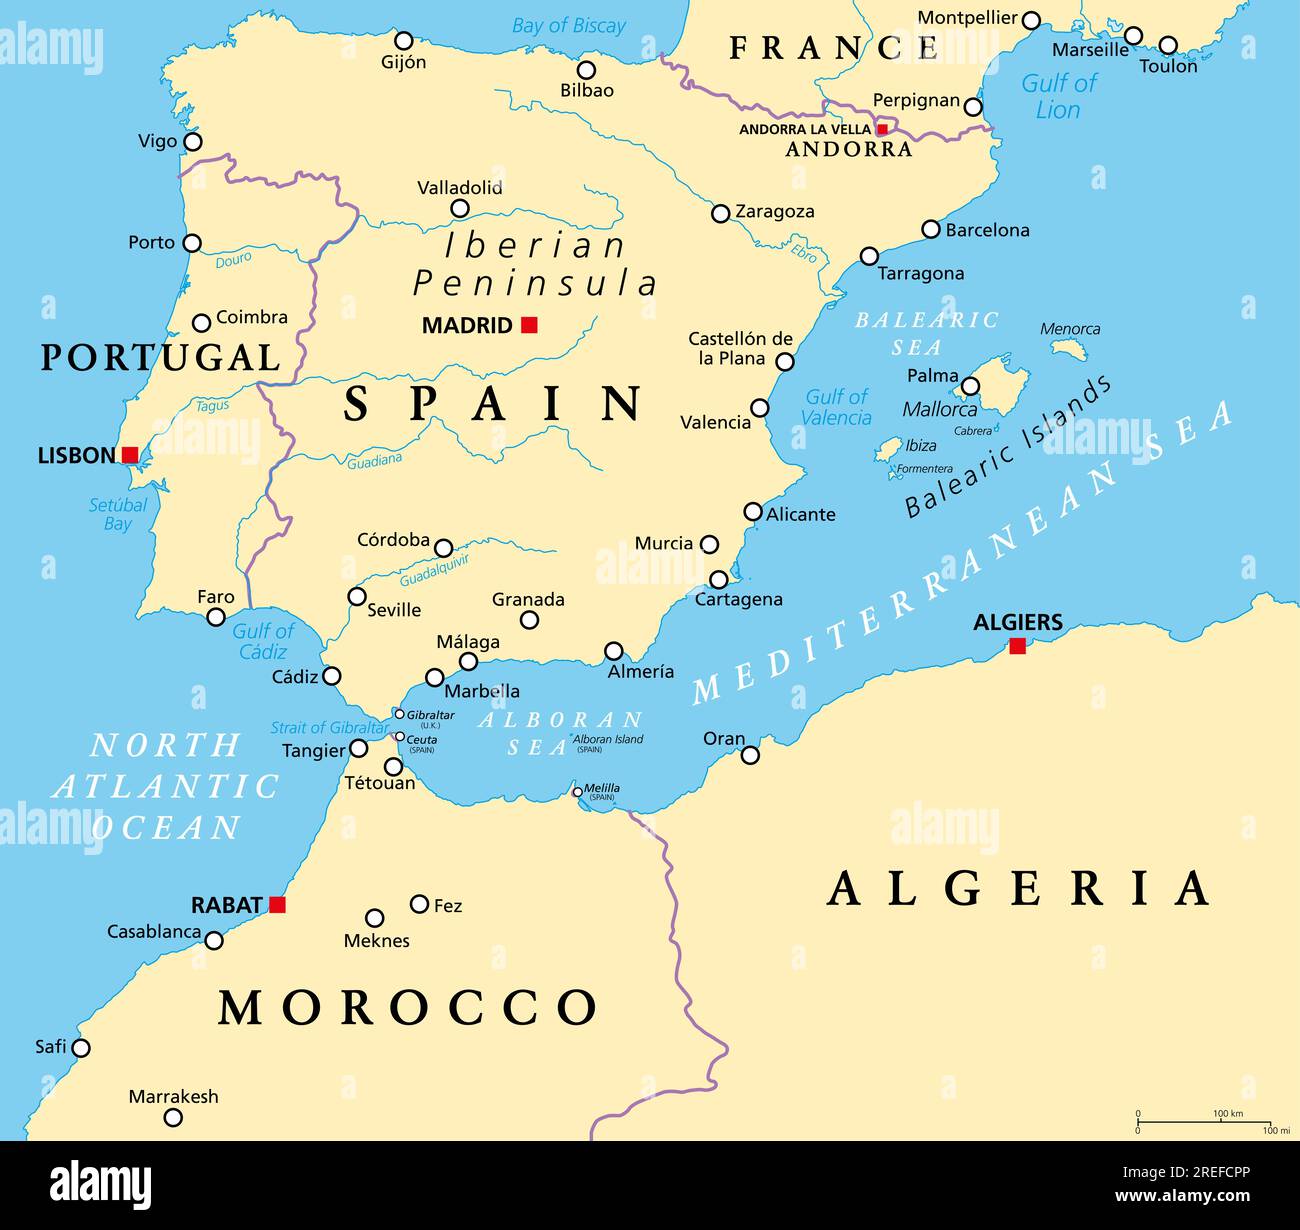 Méditerranée occidentale, carte politique. Péninsule ibérique, bordée par l'Atlantique Nord et la mer Méditerranée, séparée de l'Afrique par le détroit de Gibraltar. Banque D'Images